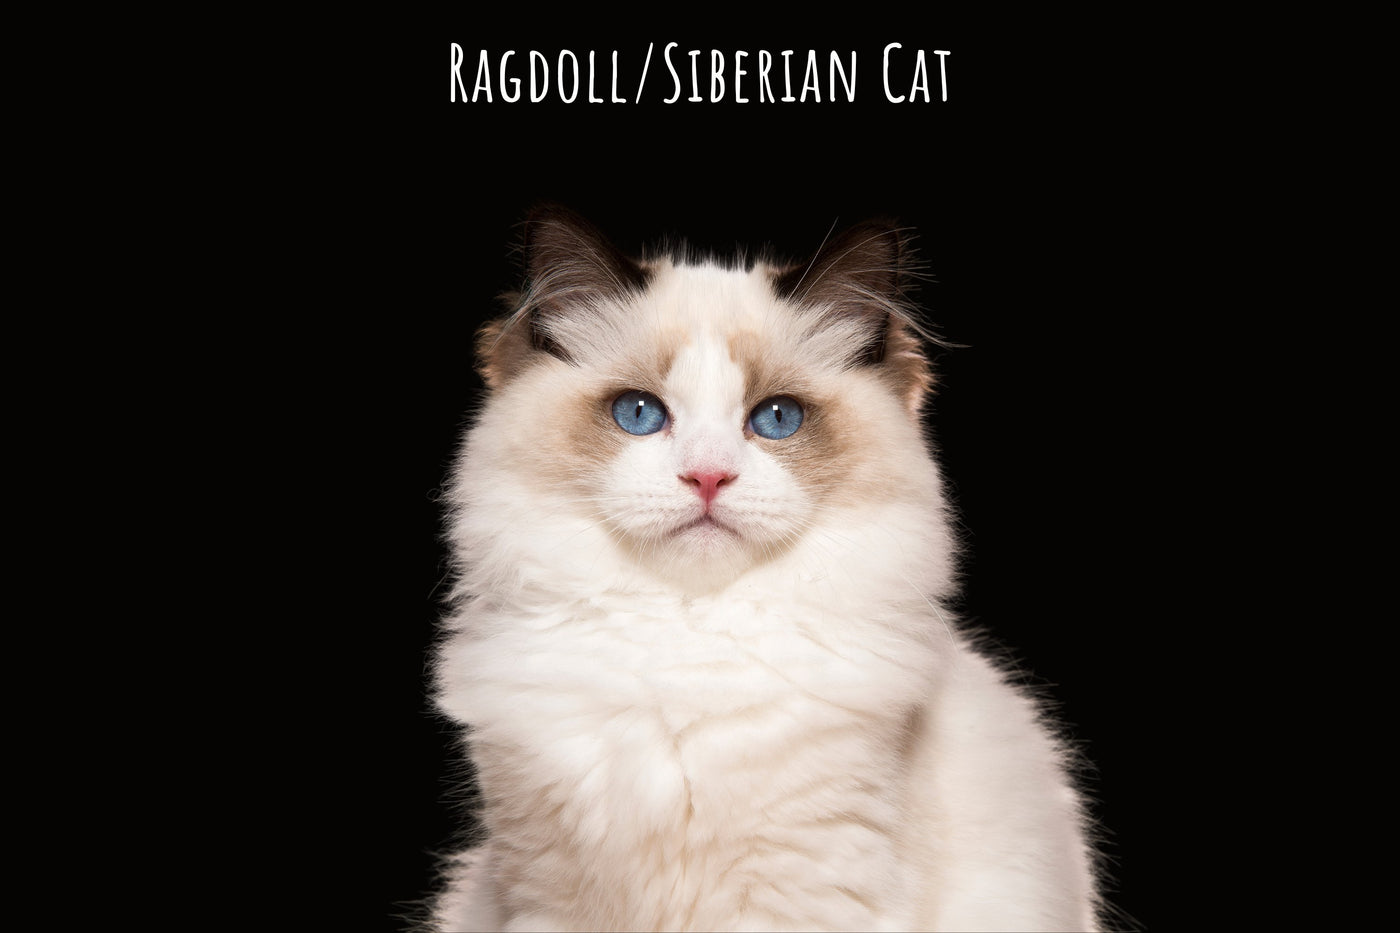 Ragdoll/Siberian cat totes | Neva masquerade gifts